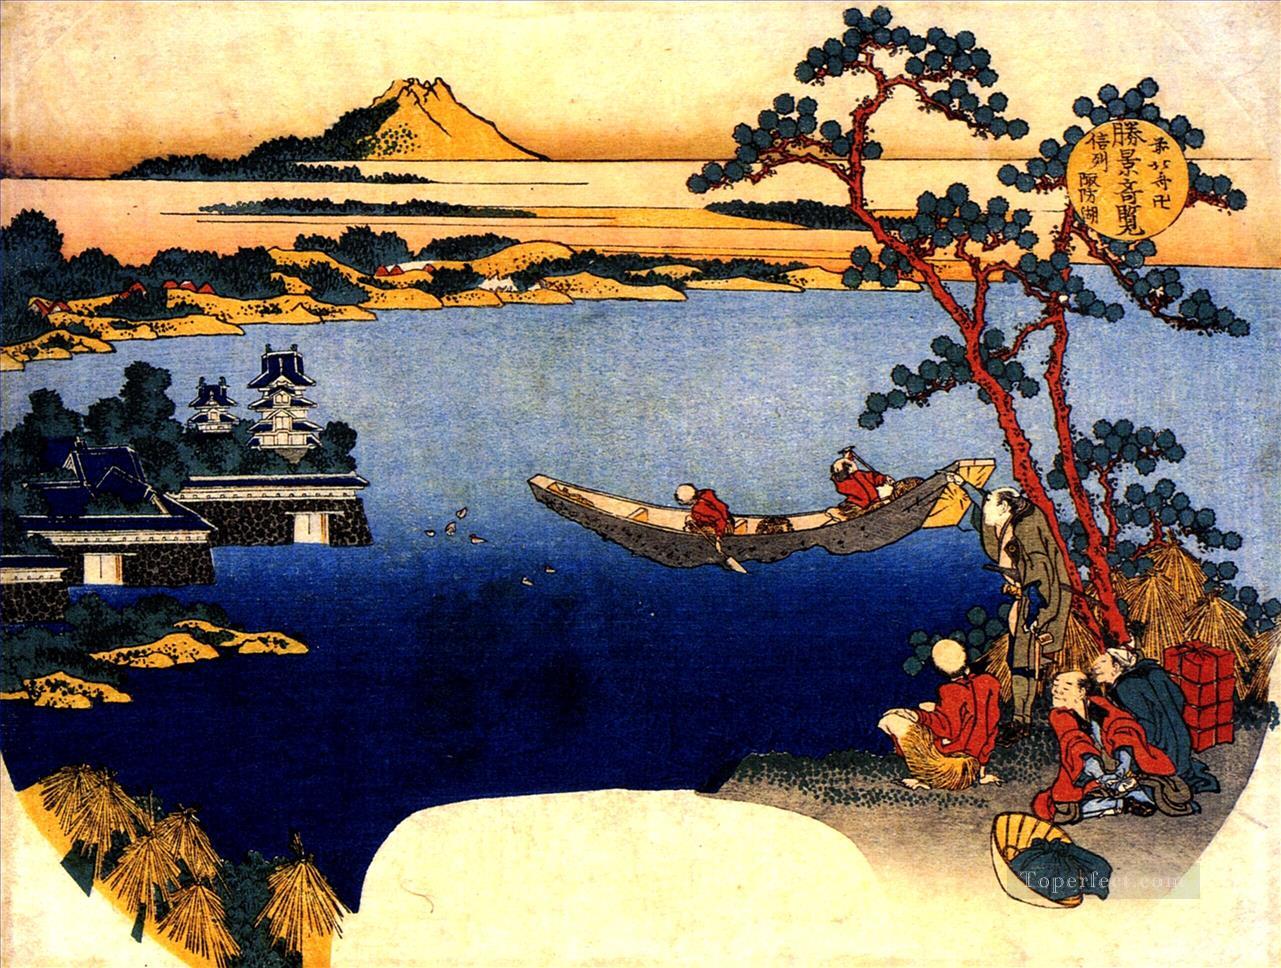 諏訪湖の眺め 葛飾北斎浮世絵油絵